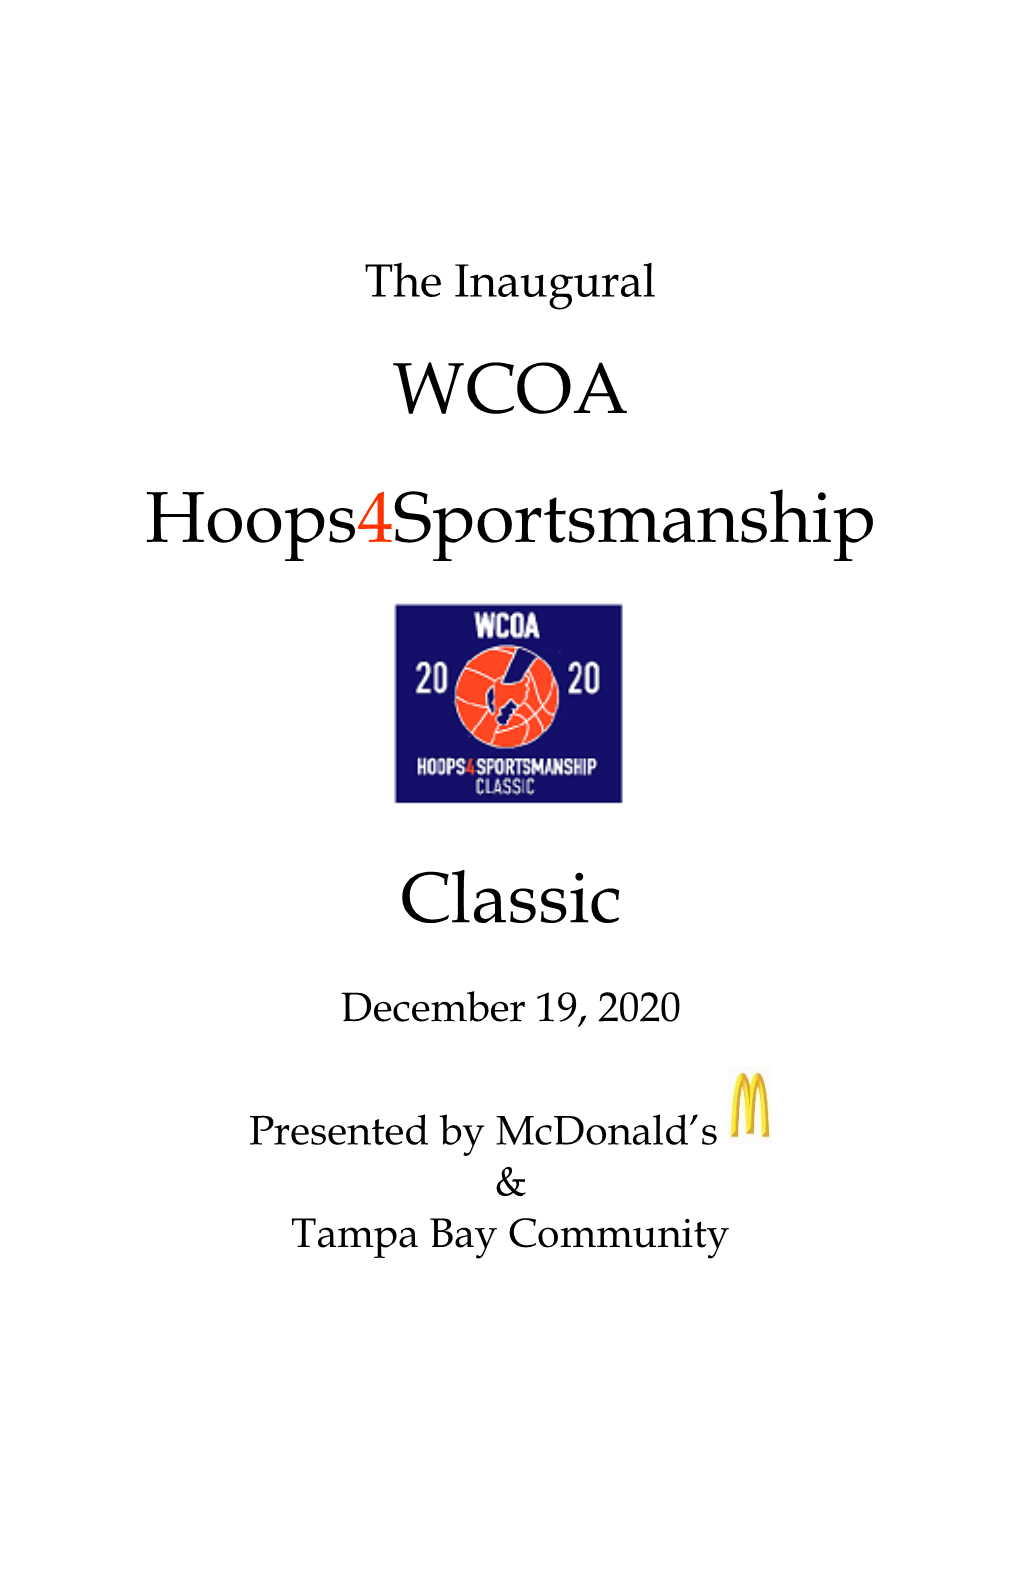 WCOA Hoops4sportsmanship Classic